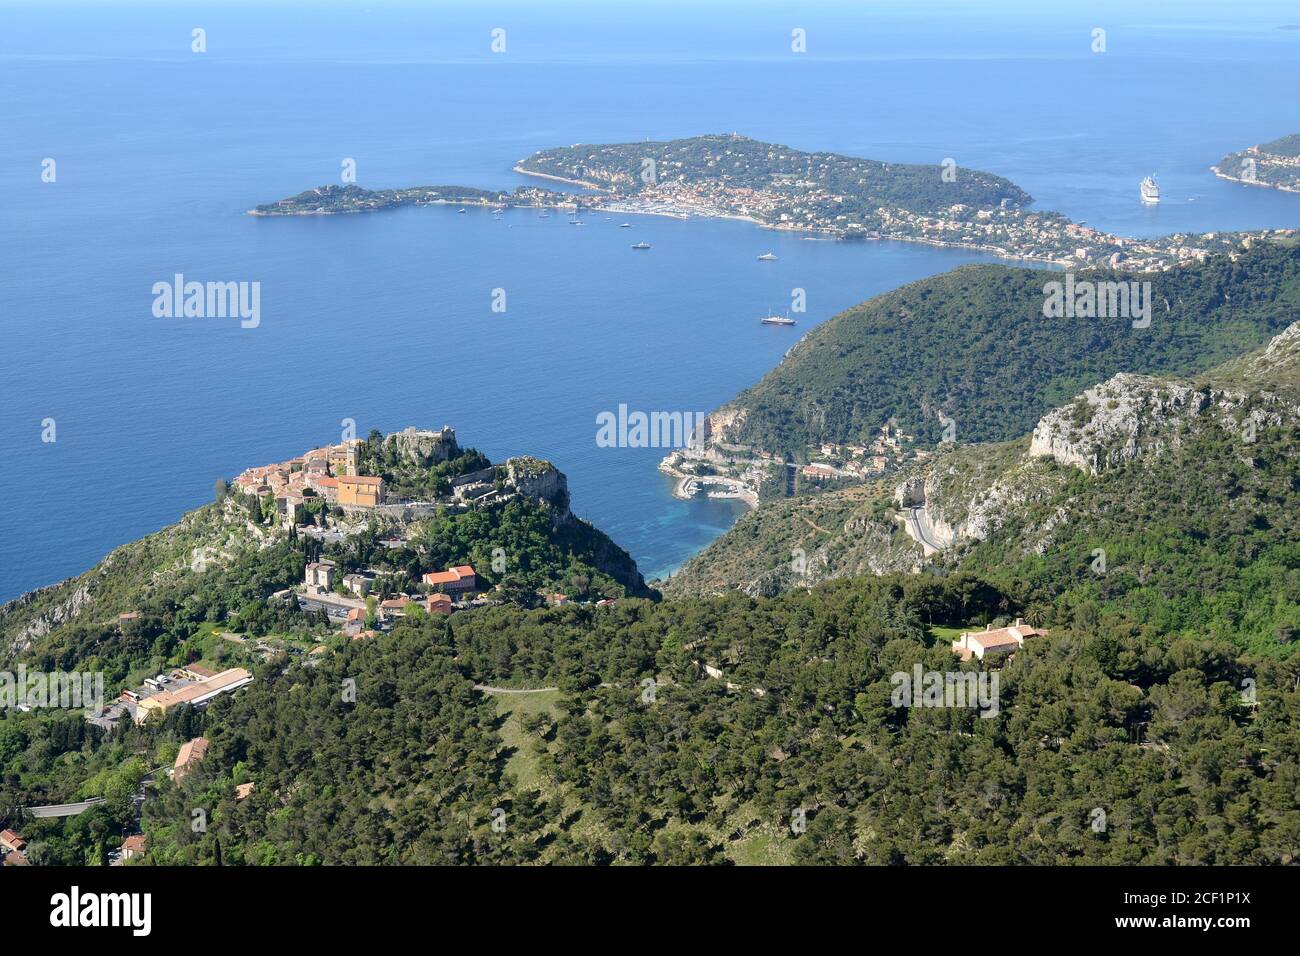 Francia, costa azzurra, villaggio di Eze, borgo medievale arroccato che domina il capo Ferrat e il mar mediterraneo in un sito naturale eccezionale. Foto Stock